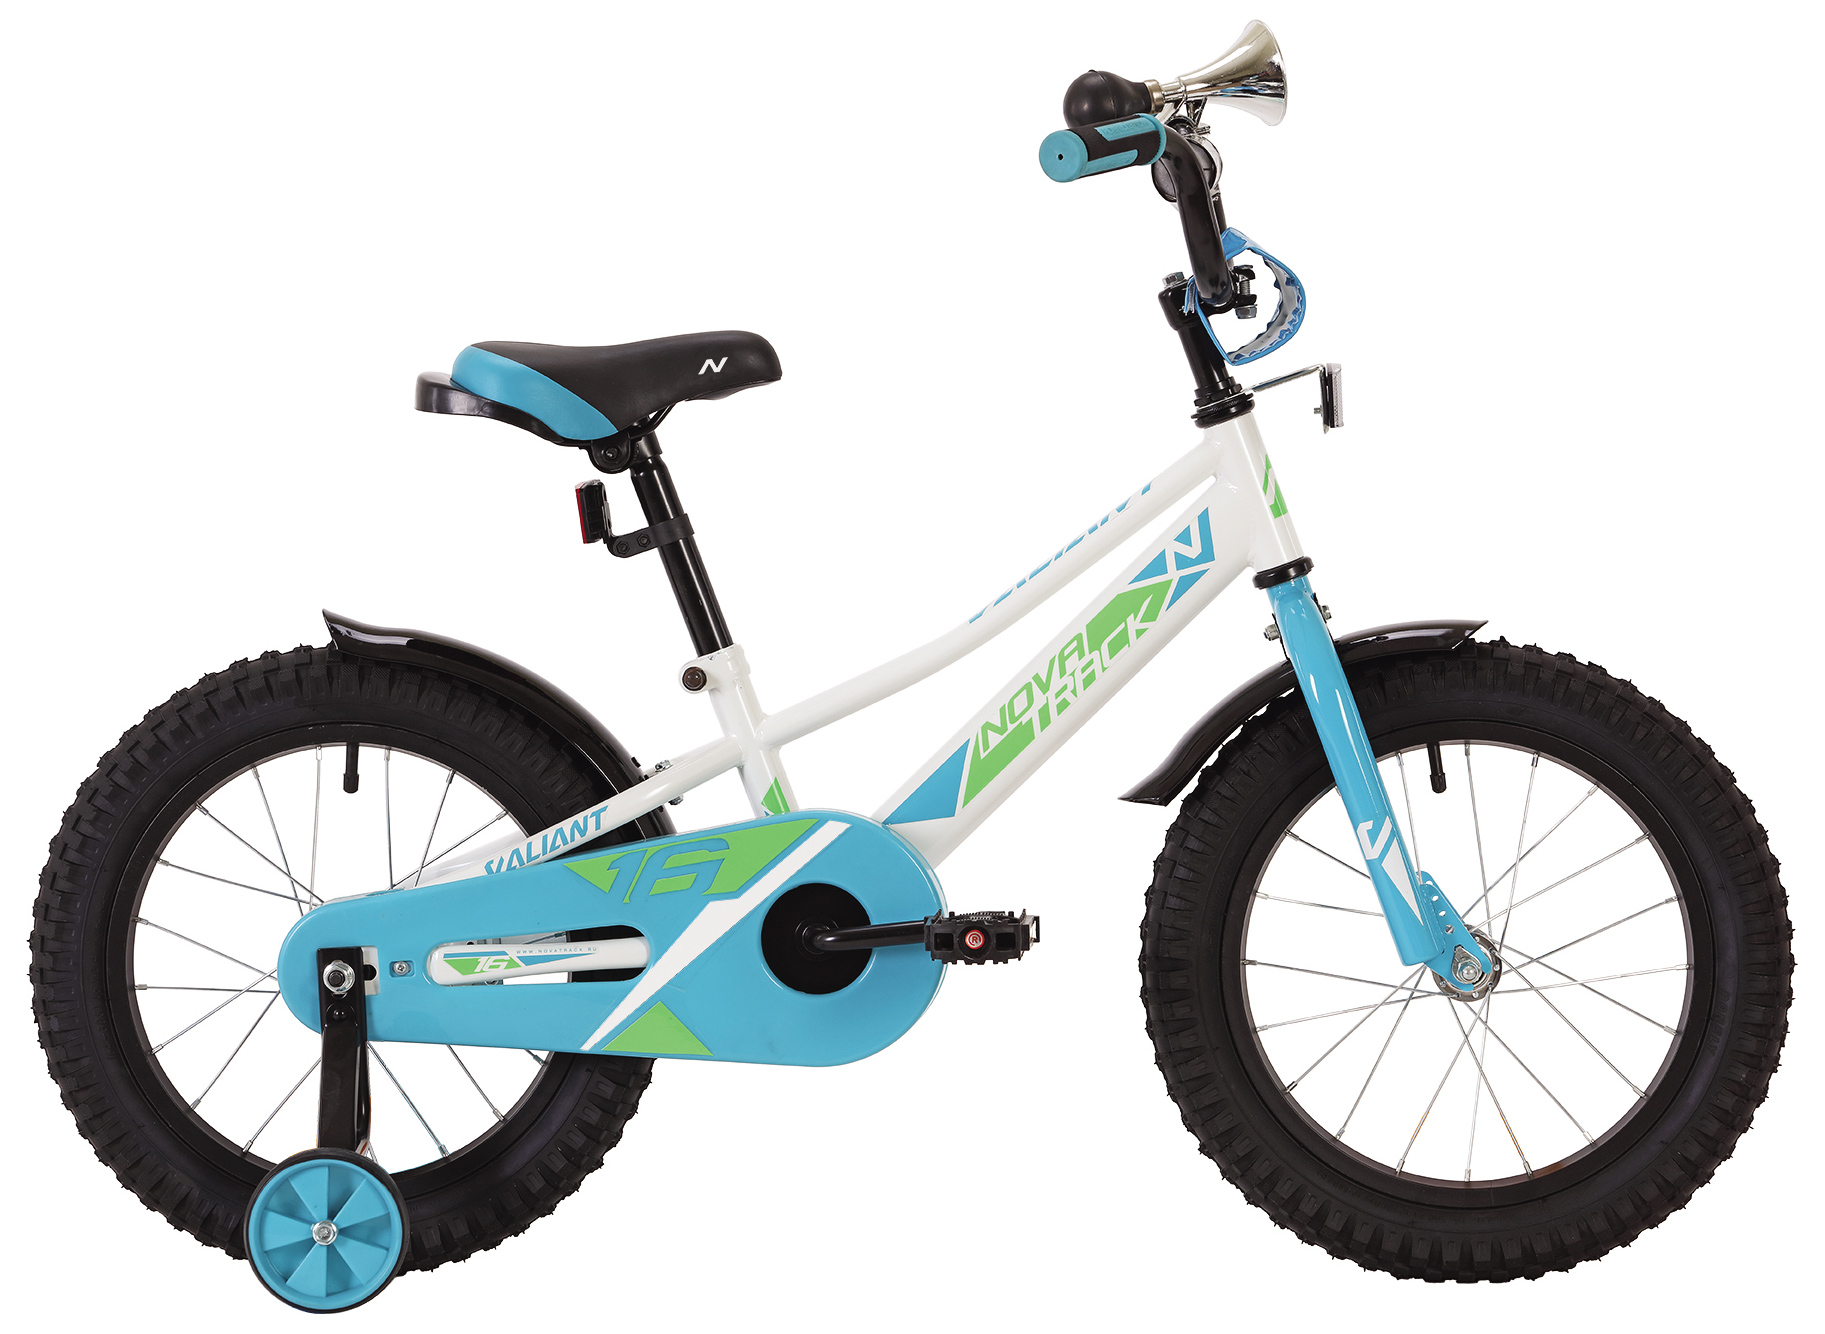  Отзывы о Детском велосипеде Novatrack Valiant 16 2022